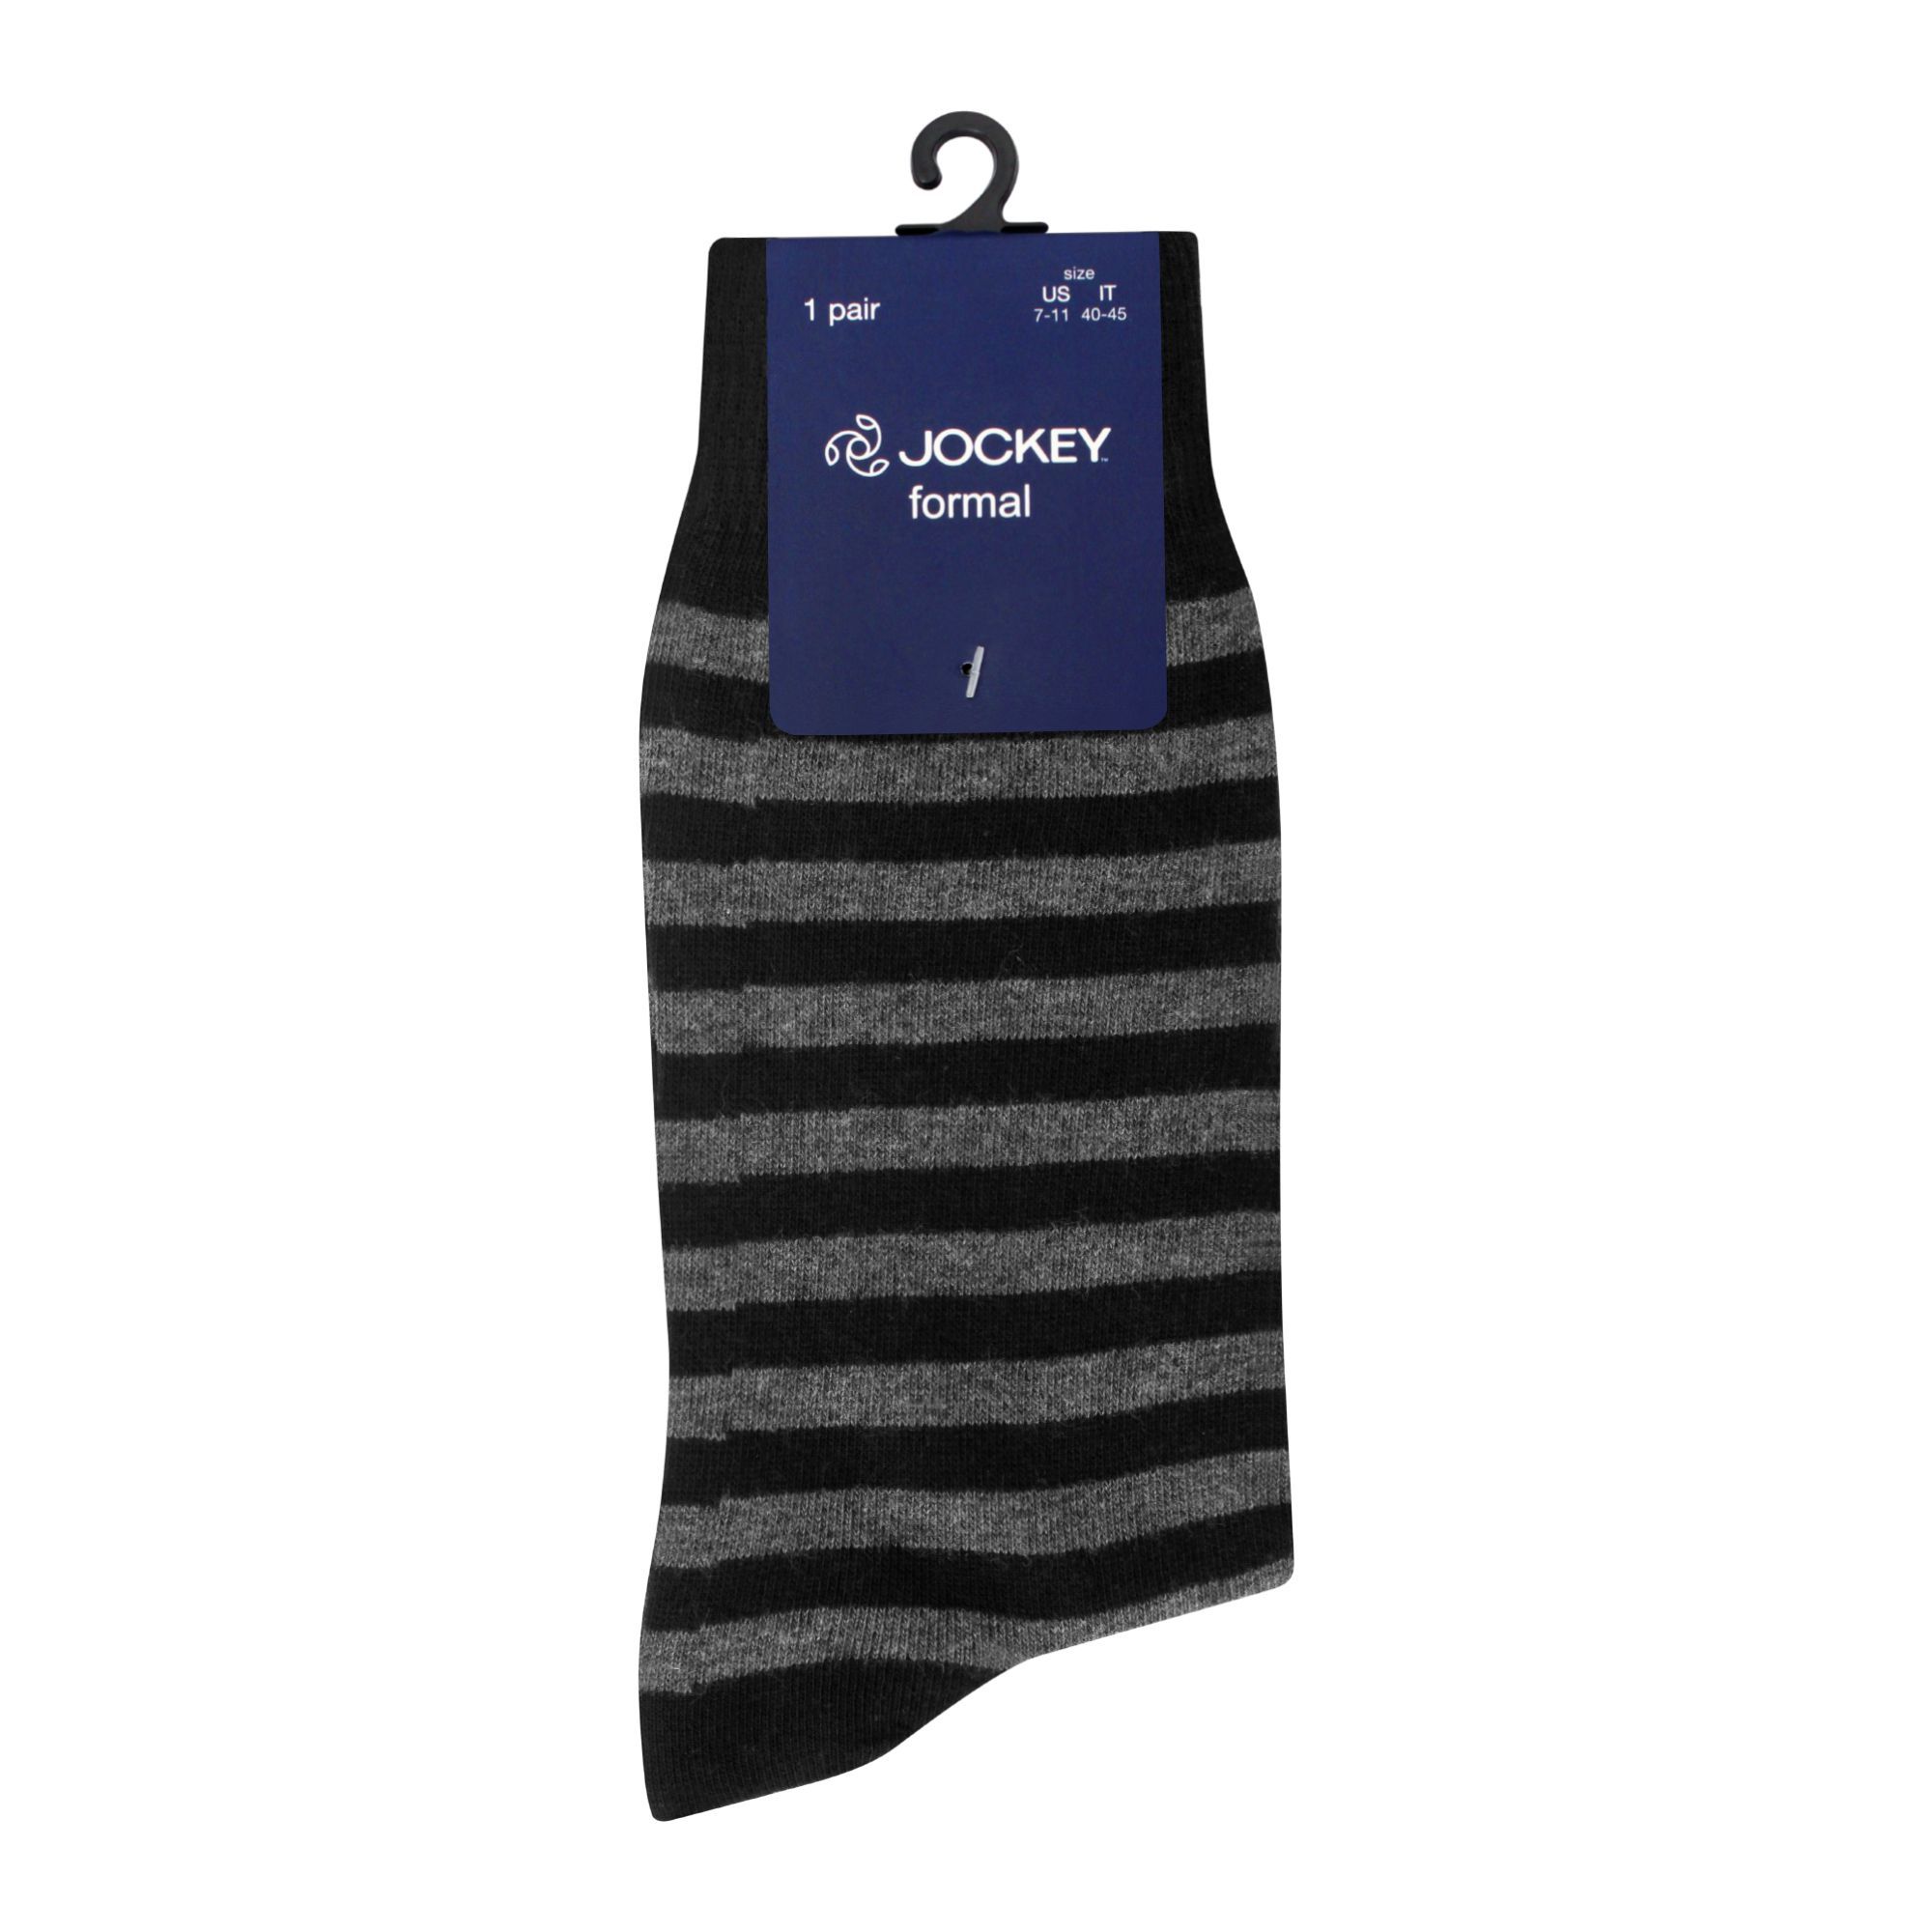 Buy Jockey Men's Socks Formal, Stripe, MC1802 Online at Best Price in ...